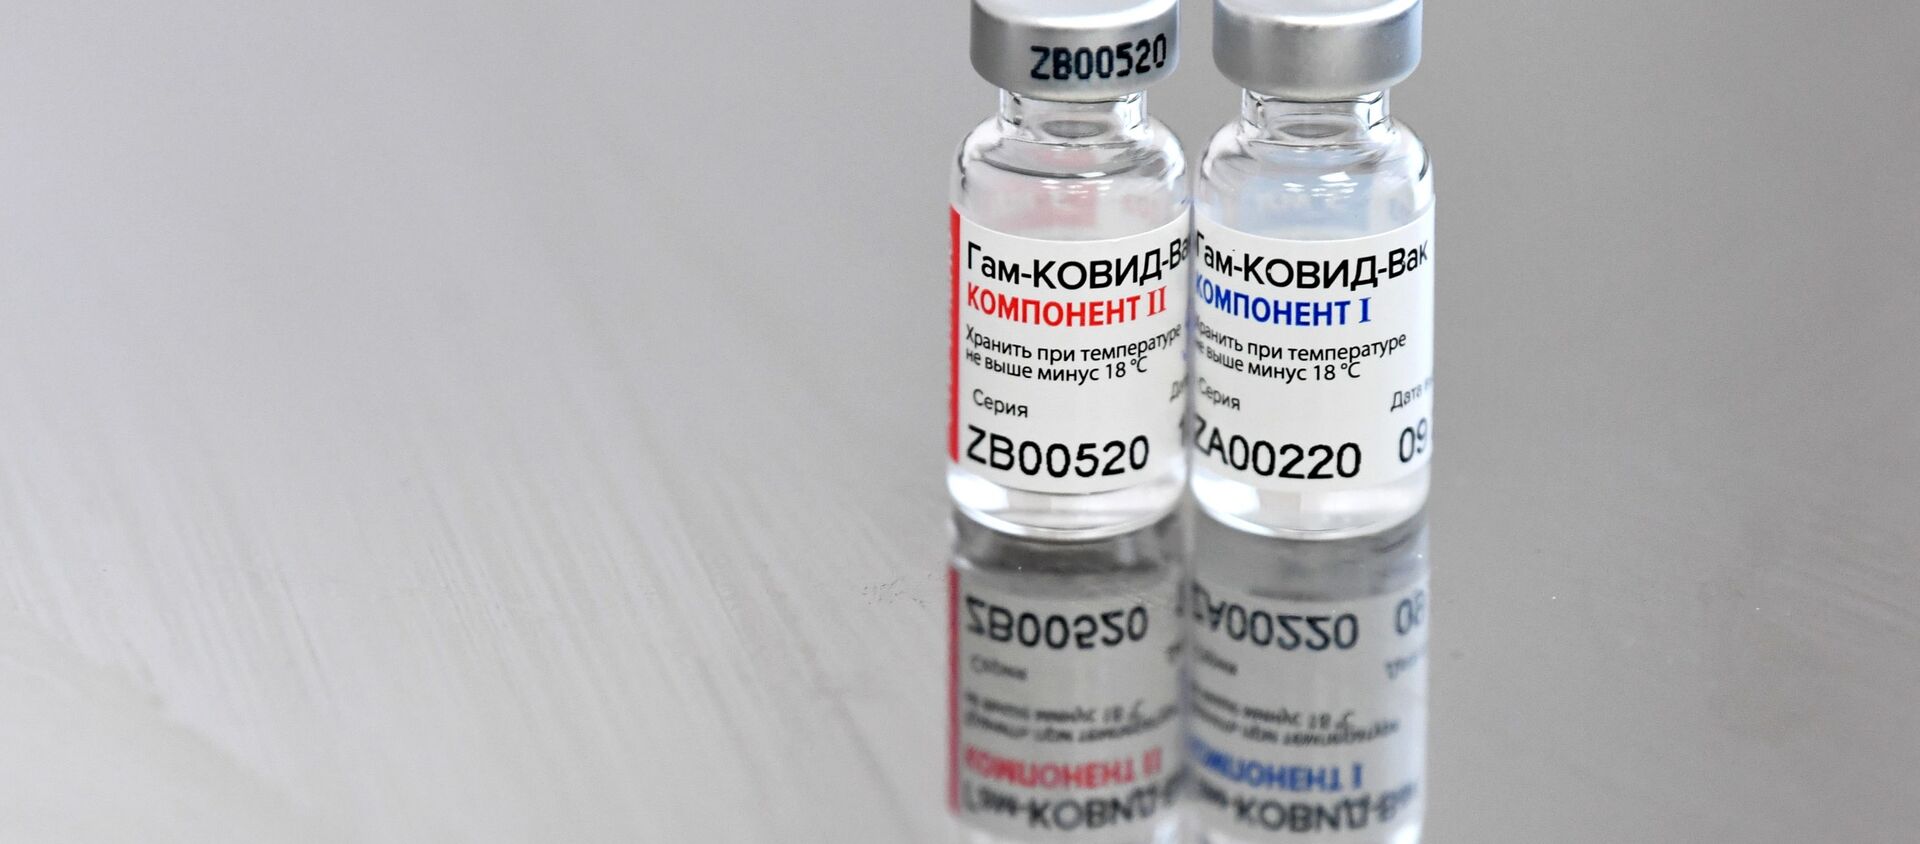 В Москве началась вакцинация от COVID-19 для людей старше 60 лет - Sputnik Ўзбекистон, 1920, 04.02.2021